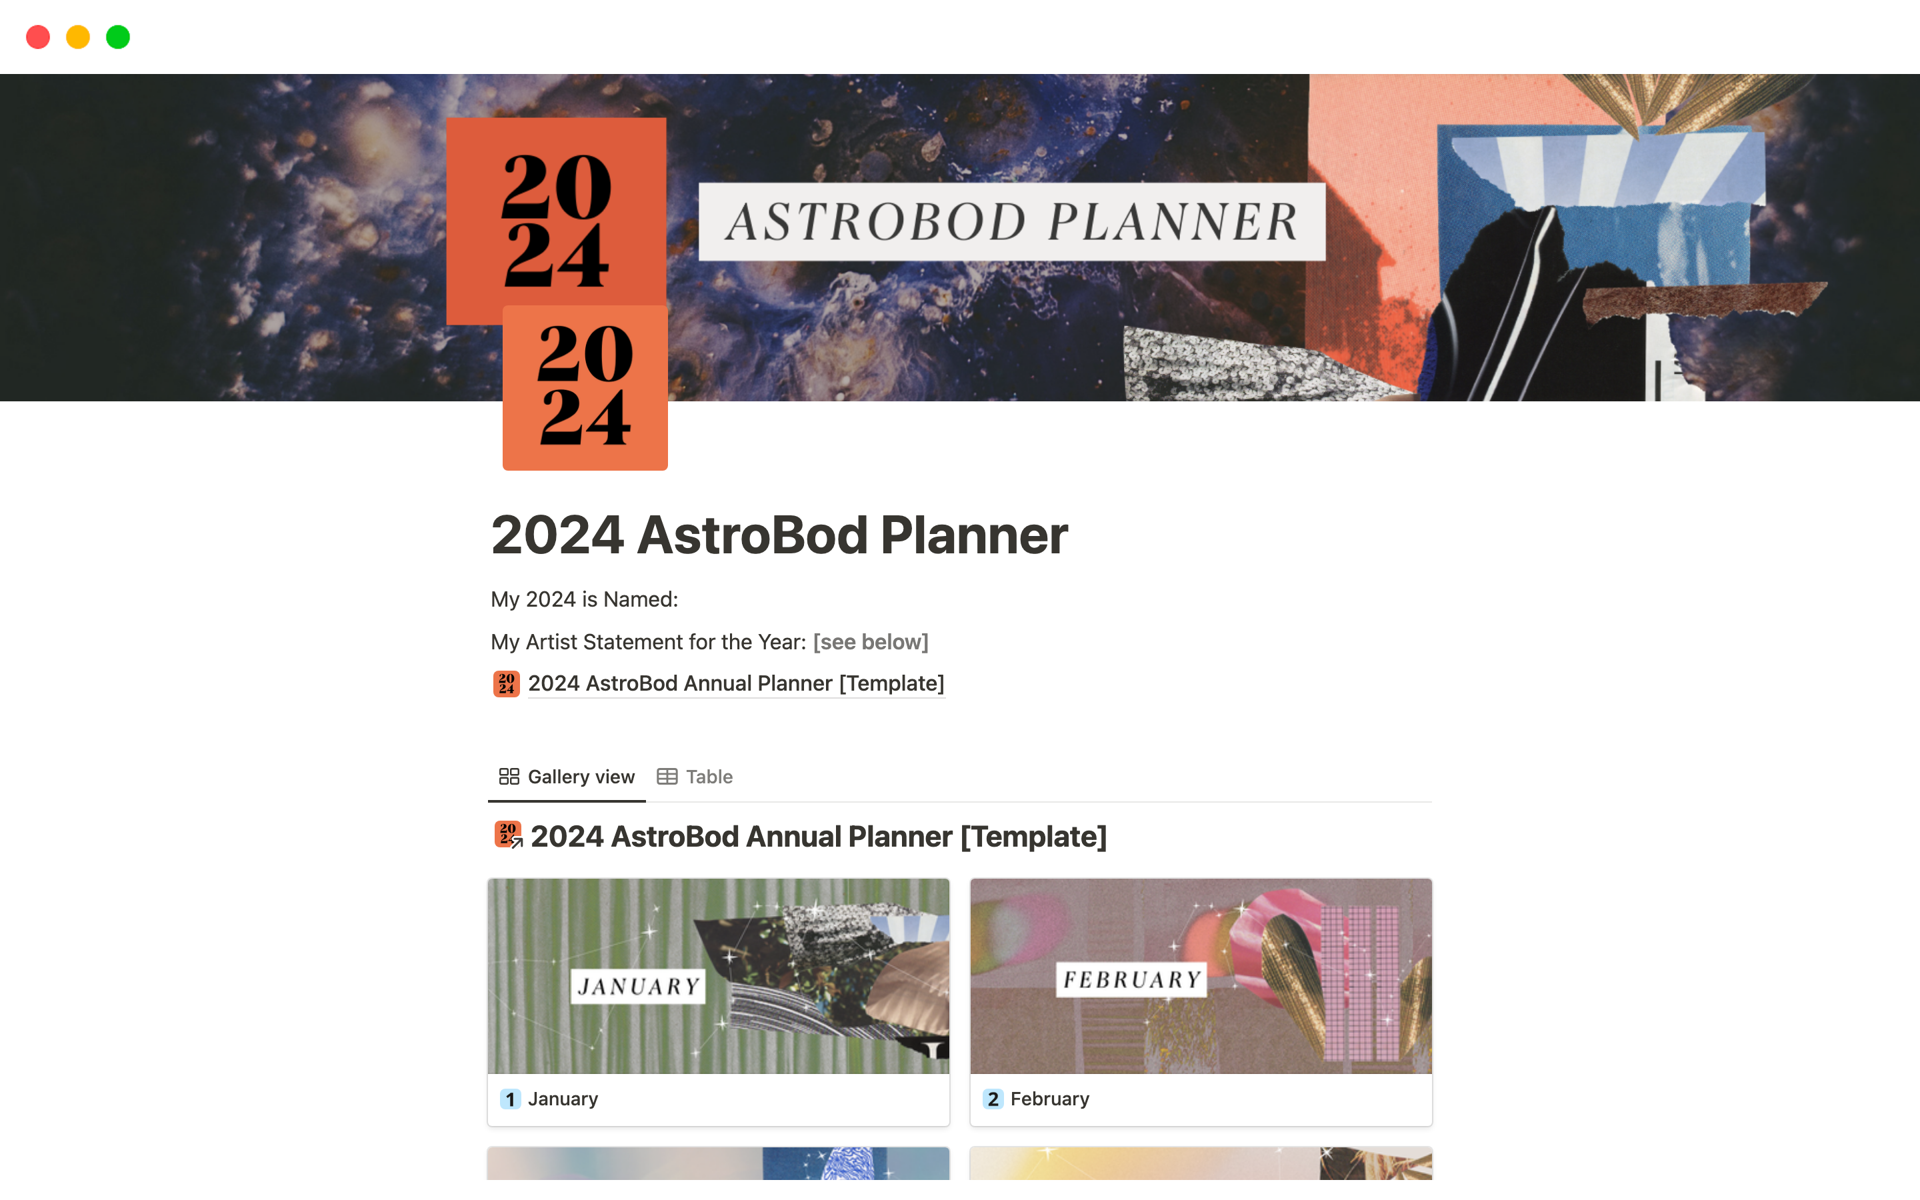 Vista previa de una plantilla para 2024 AstroBod Planner